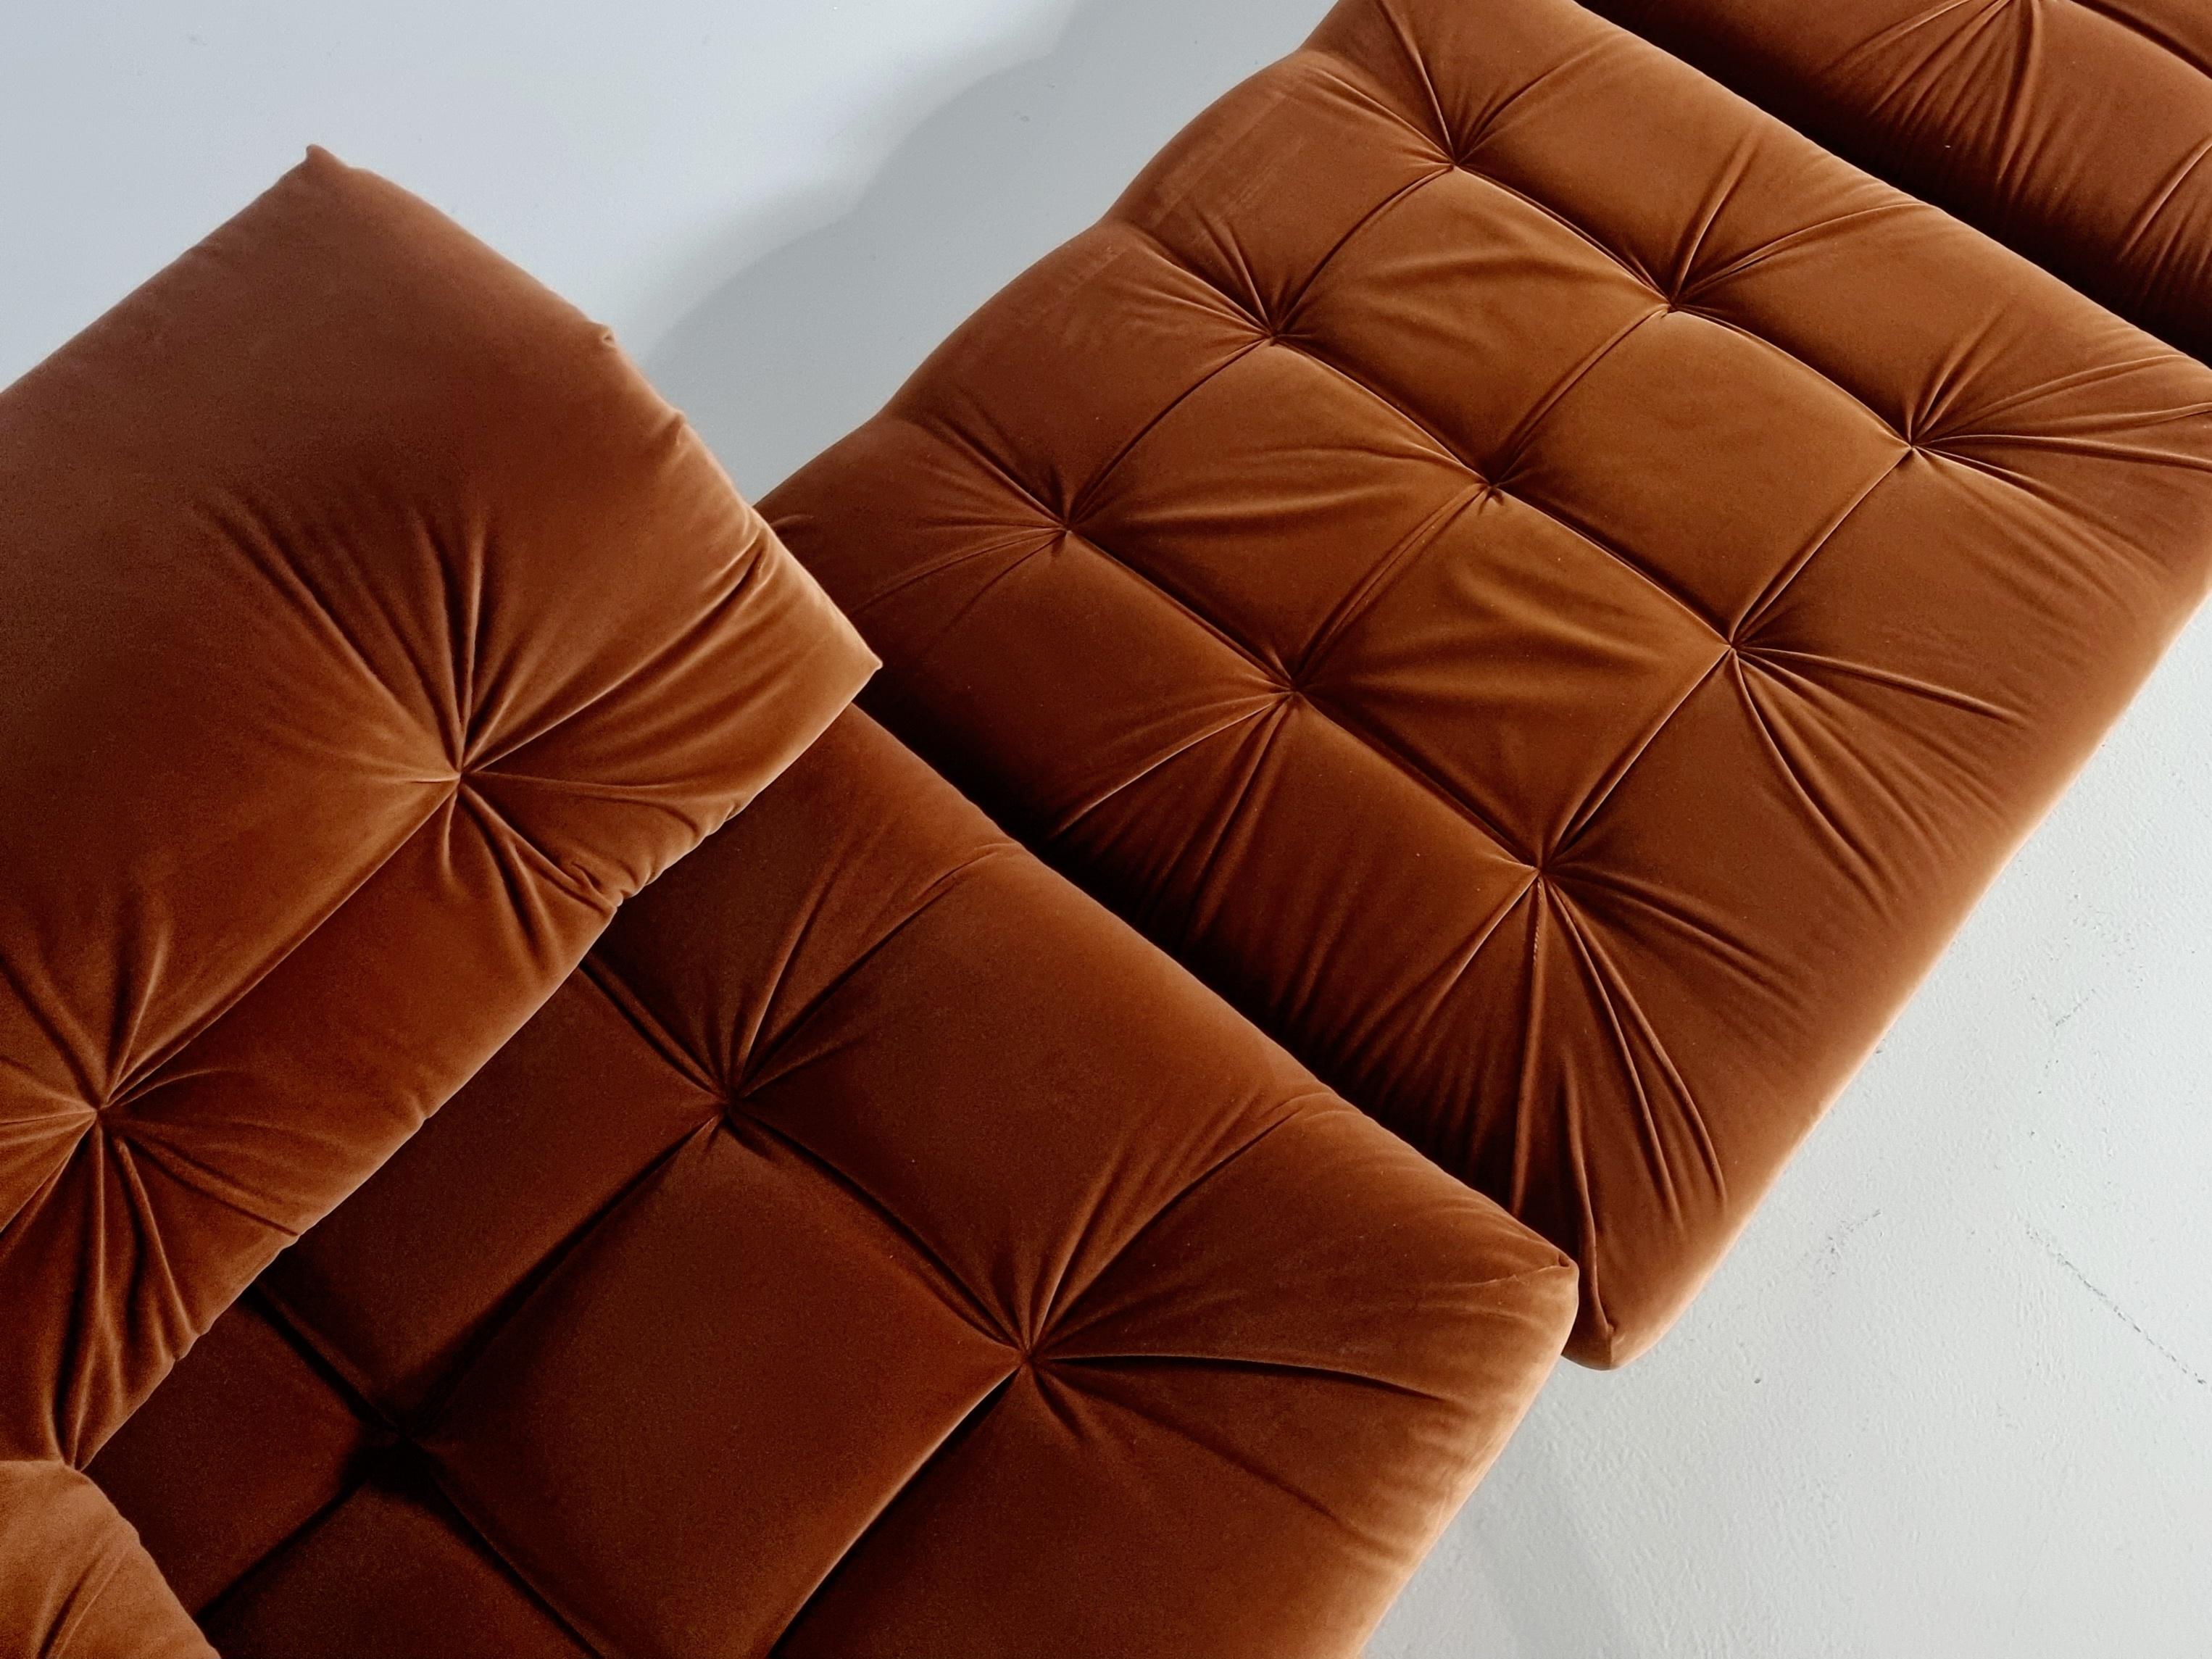 vintage roche bobois modular sofa